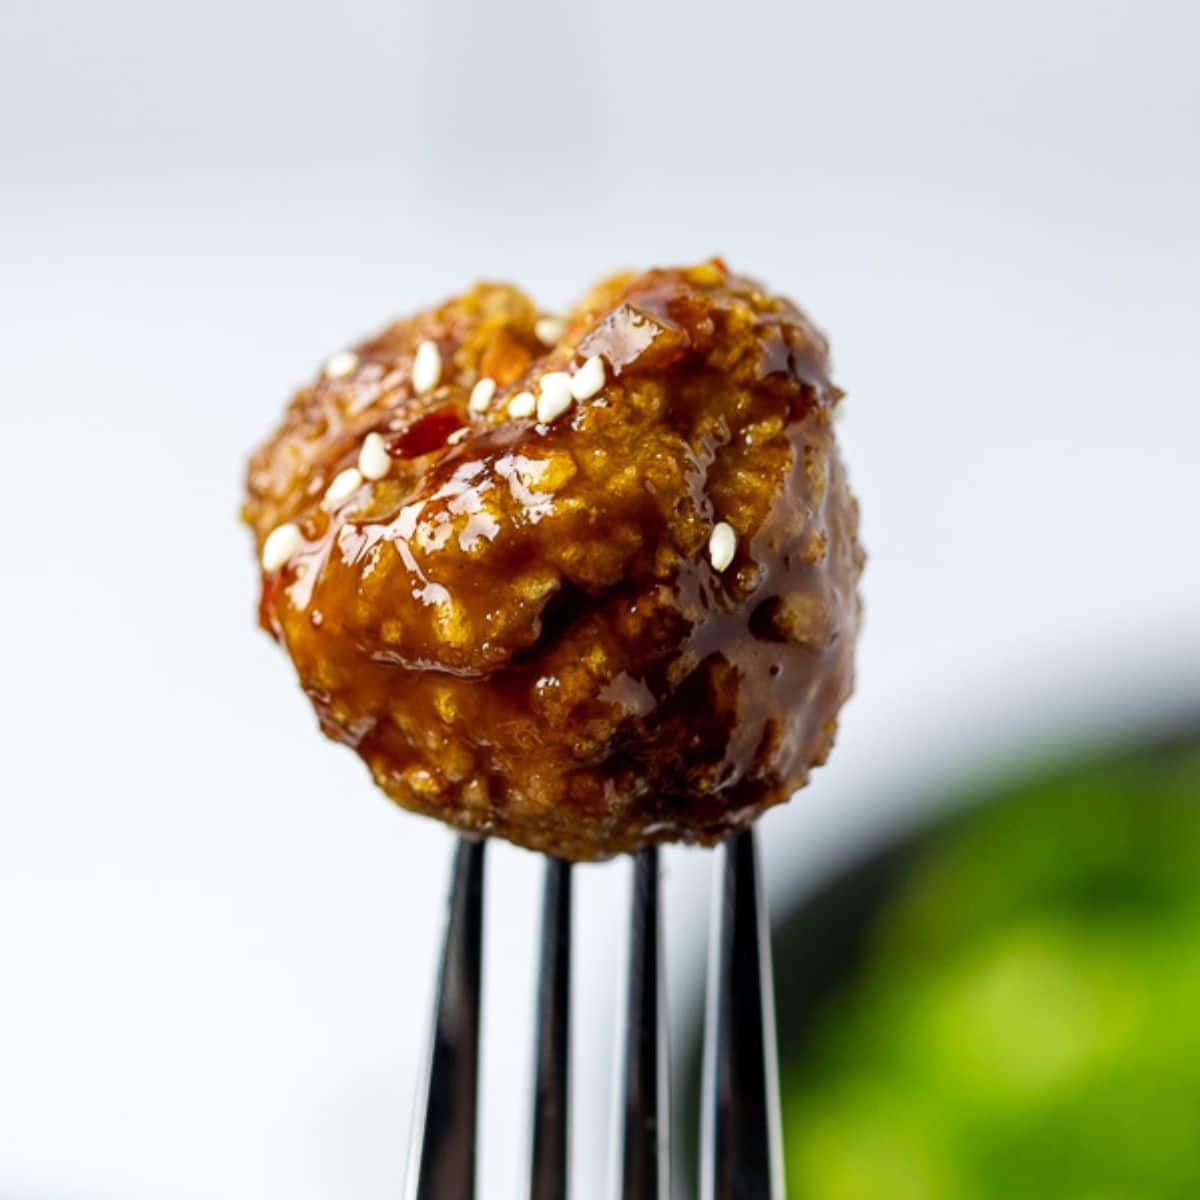 Asian Meatball on a fork.